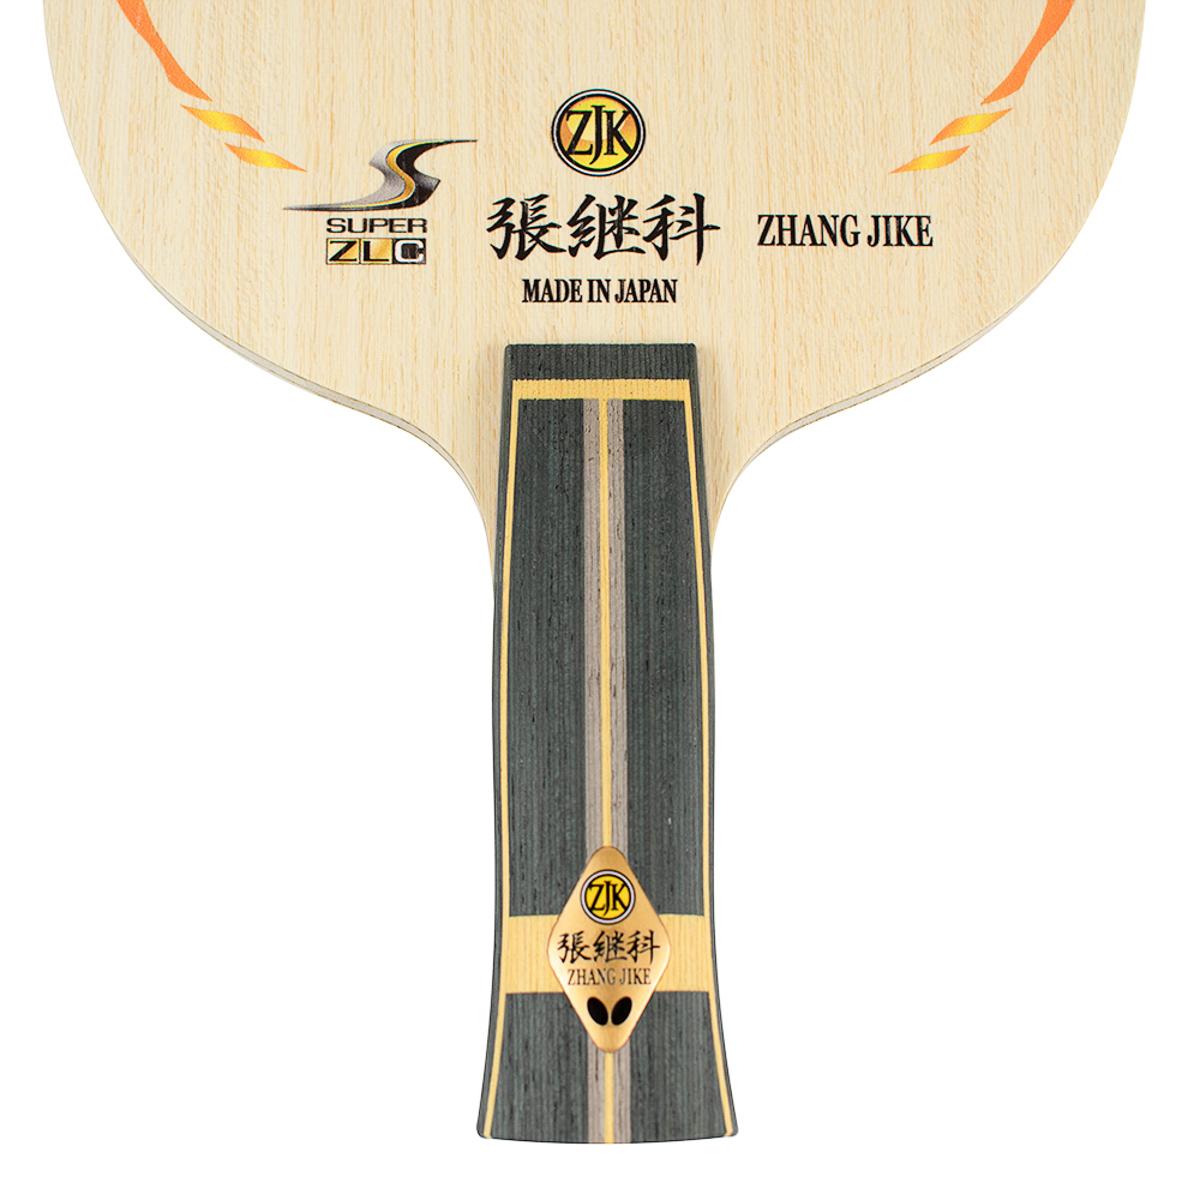 Zhang Jike Super ZLC Blade